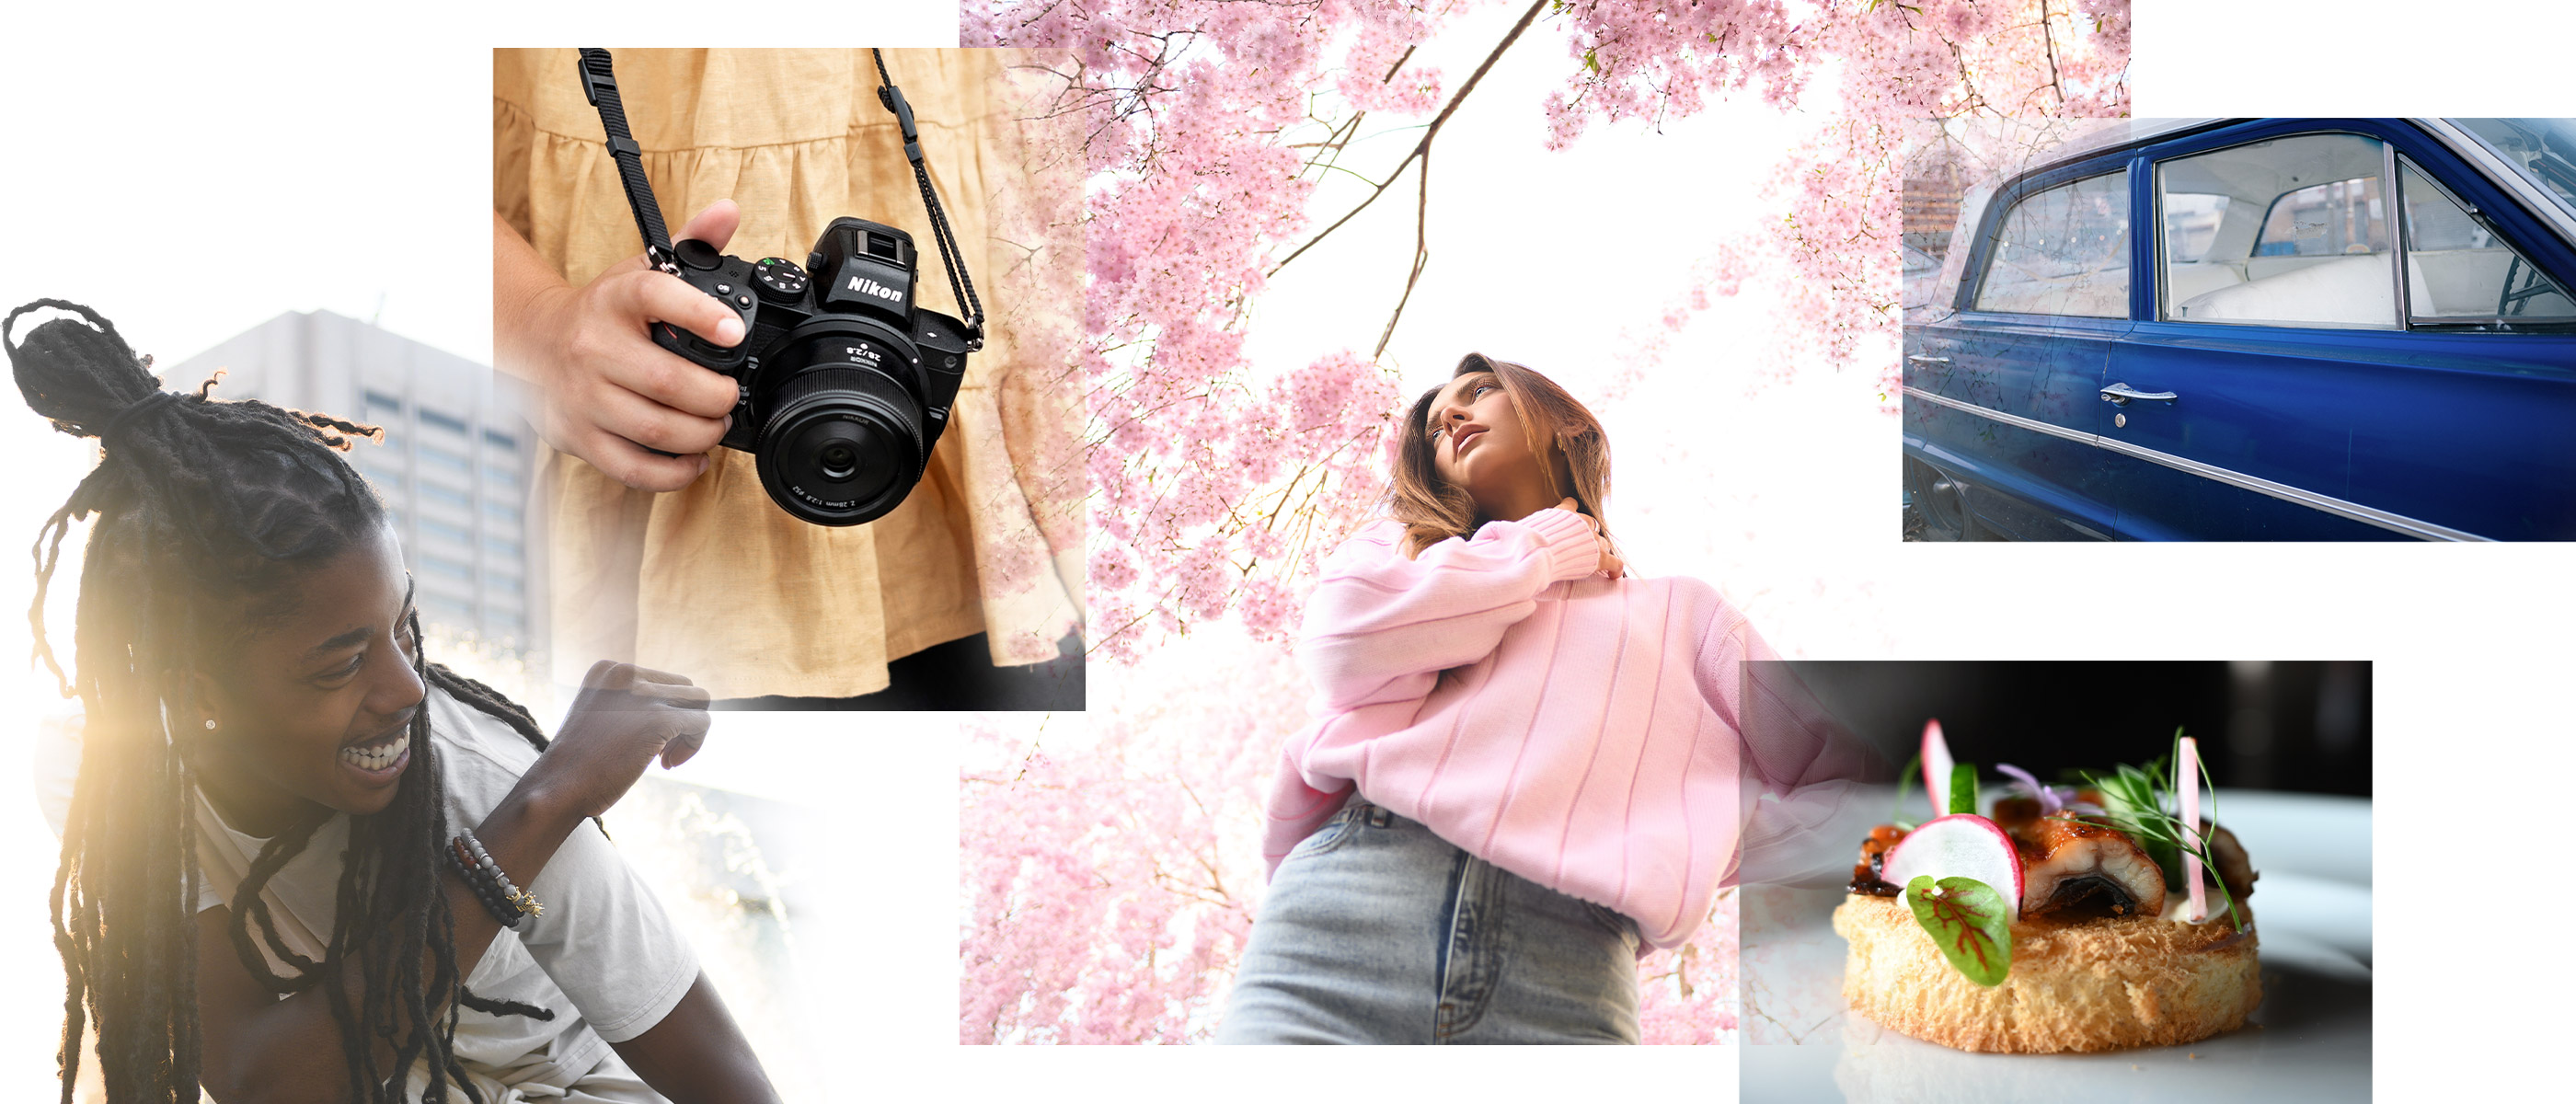 Collage de photos d'une personne tenant une caméra, une personne dans un pull rose, une portière bleue, de la nourriture et une personne souriante, prise avec l'objectif Nikkor Z 28 mm f / 2,8